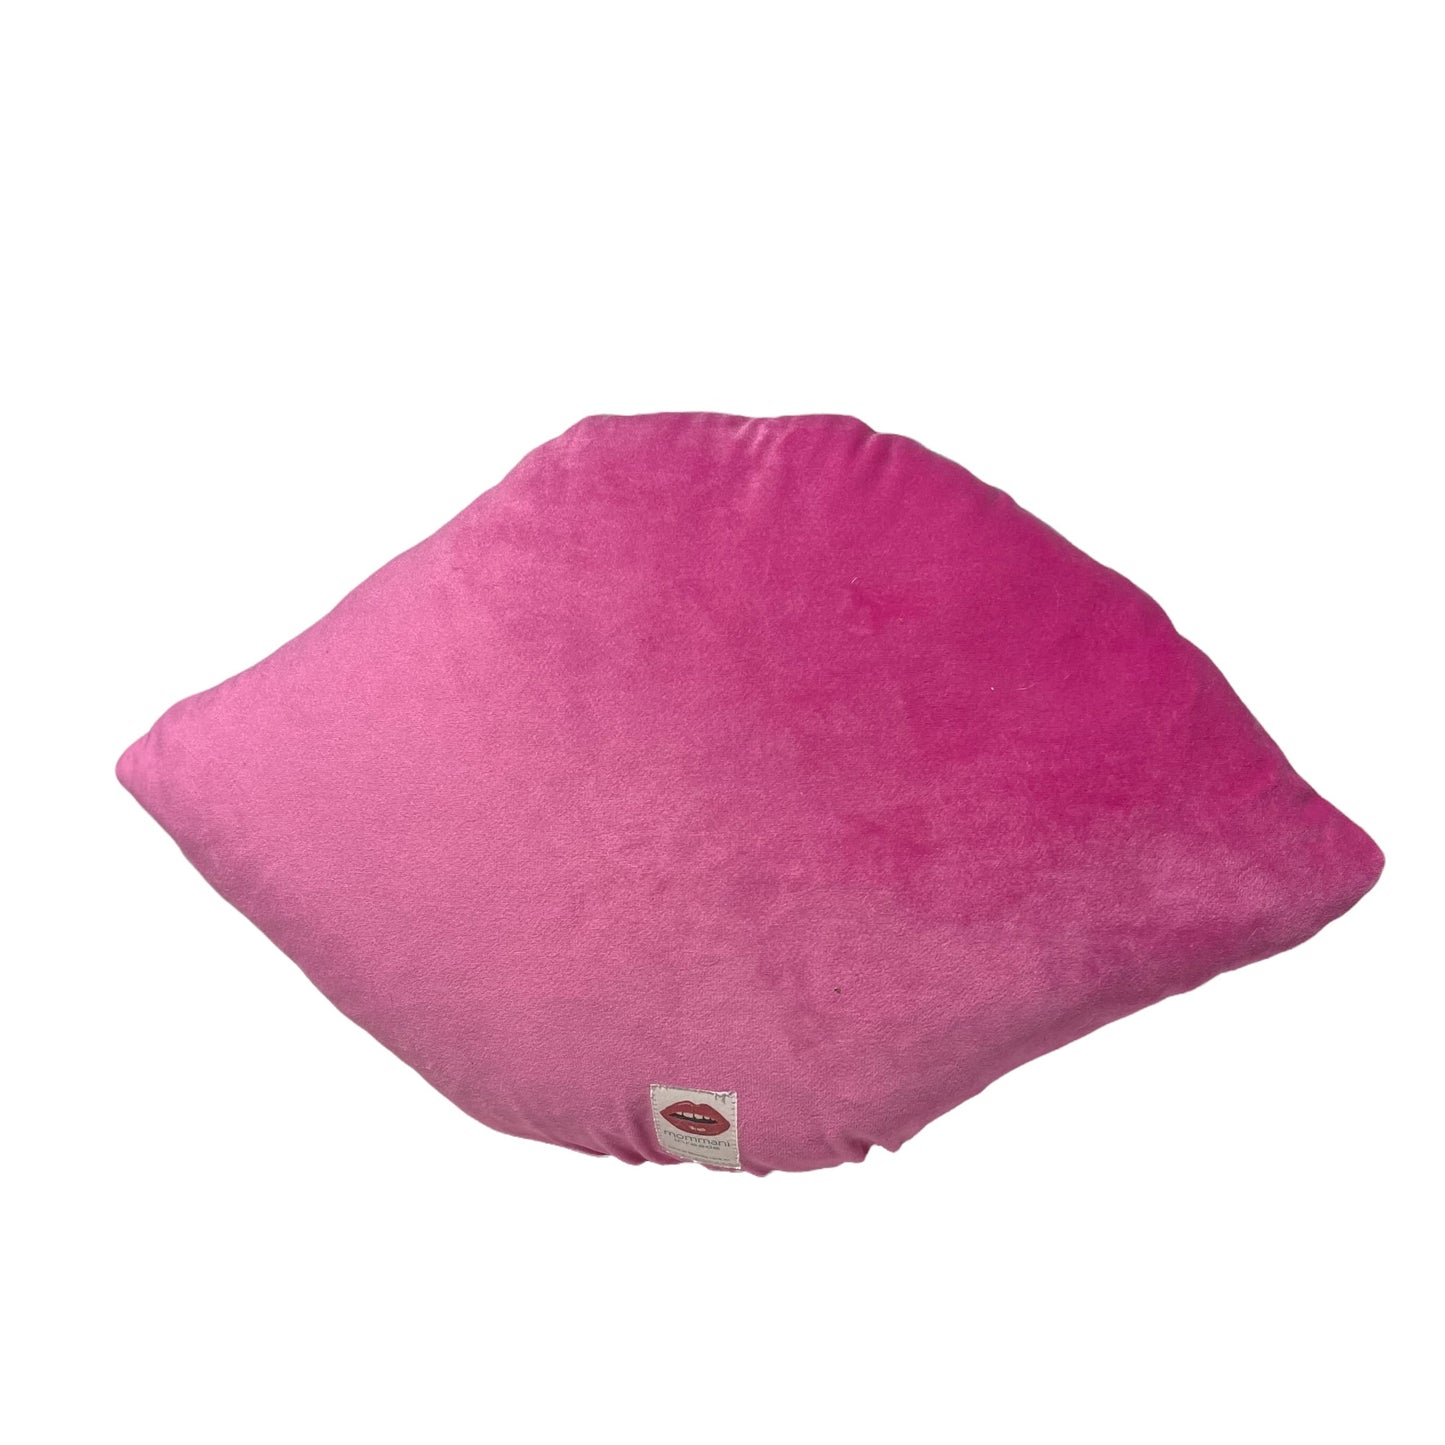 sculpted velvet pink eye pillow